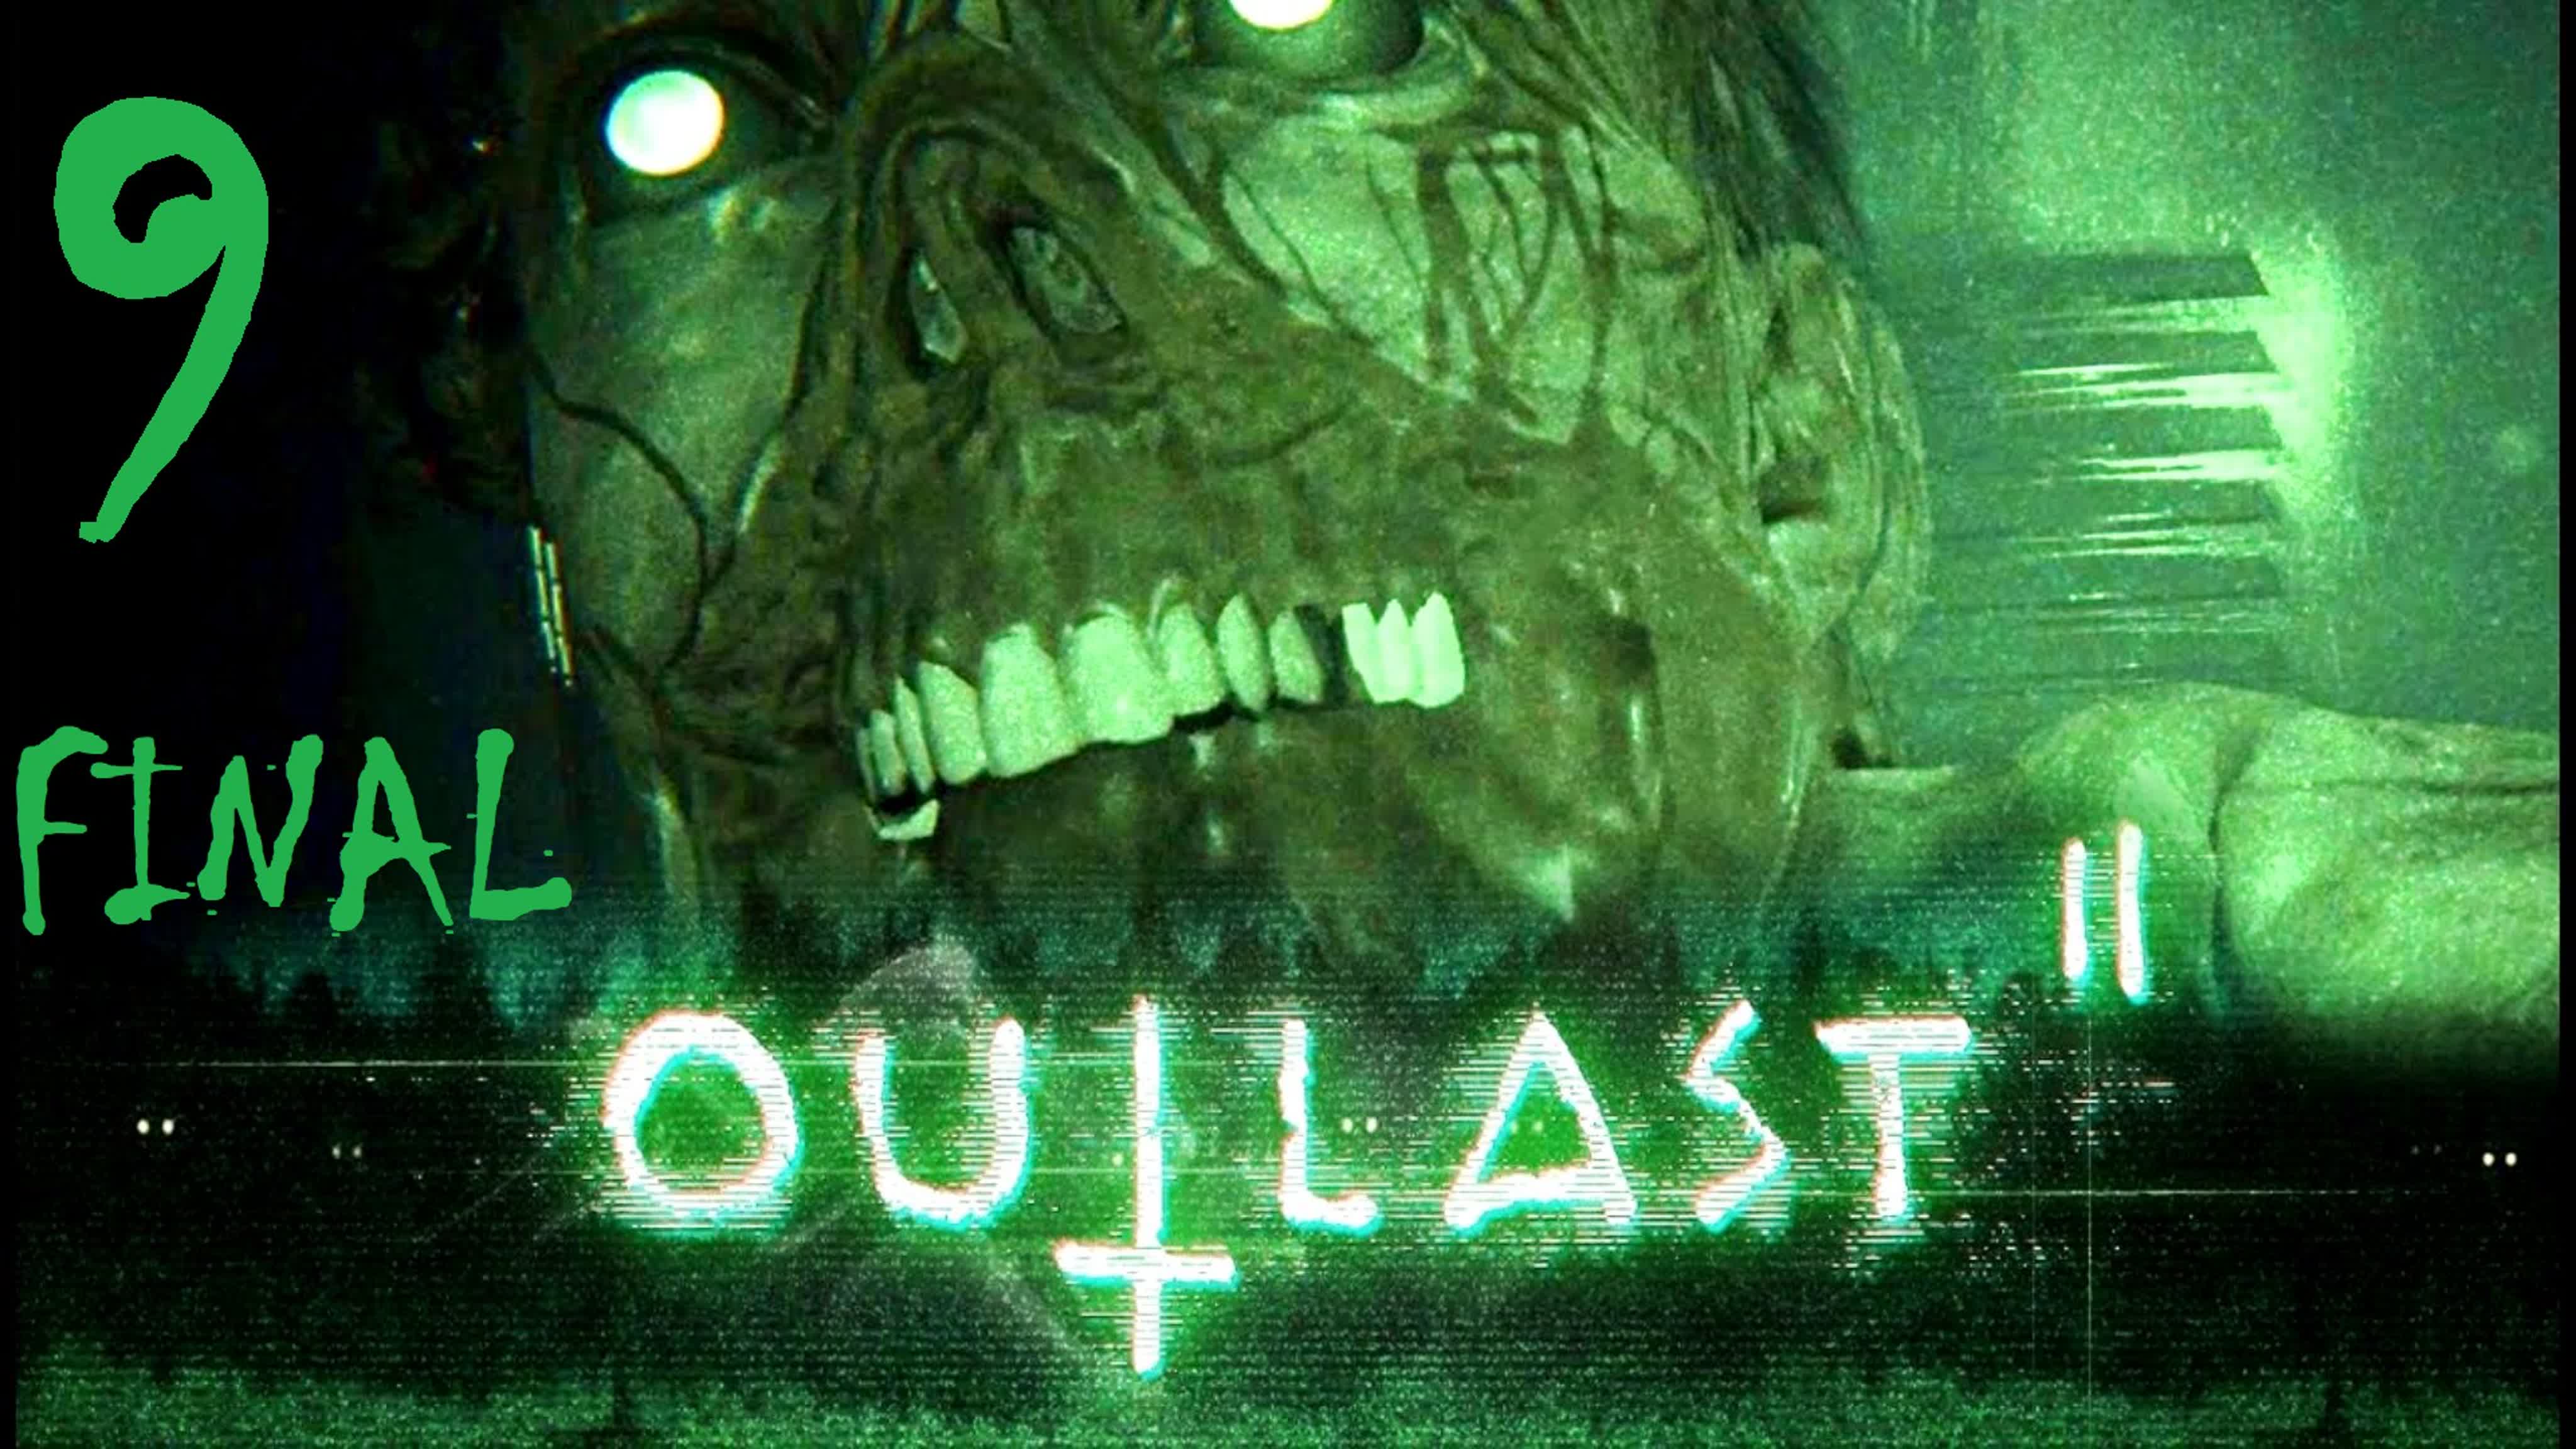 Outlast 2